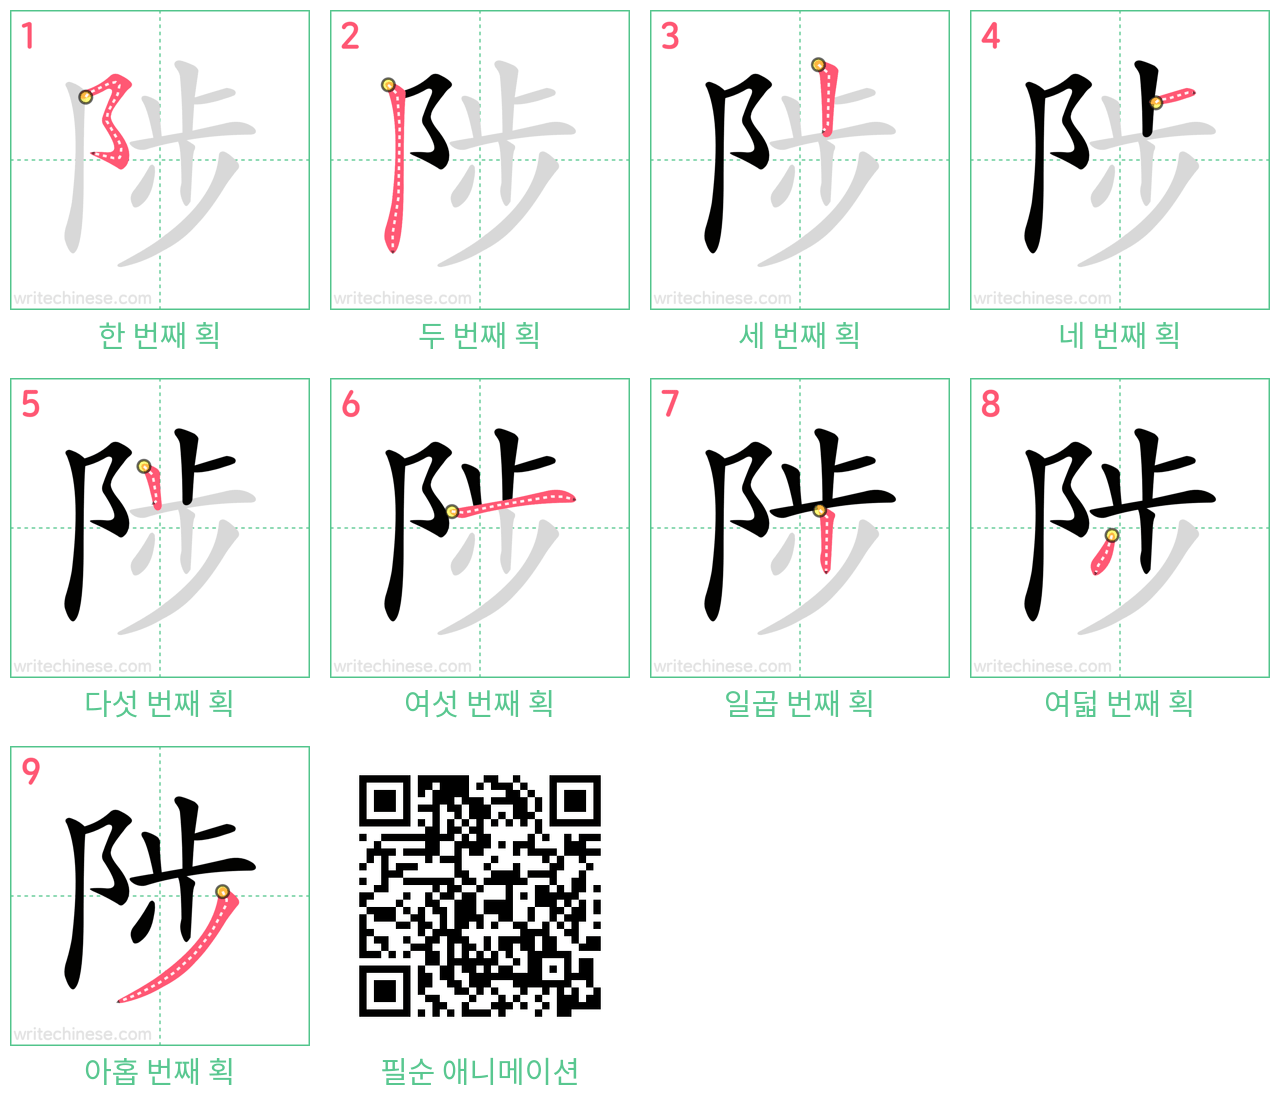 陟 step-by-step stroke order diagrams